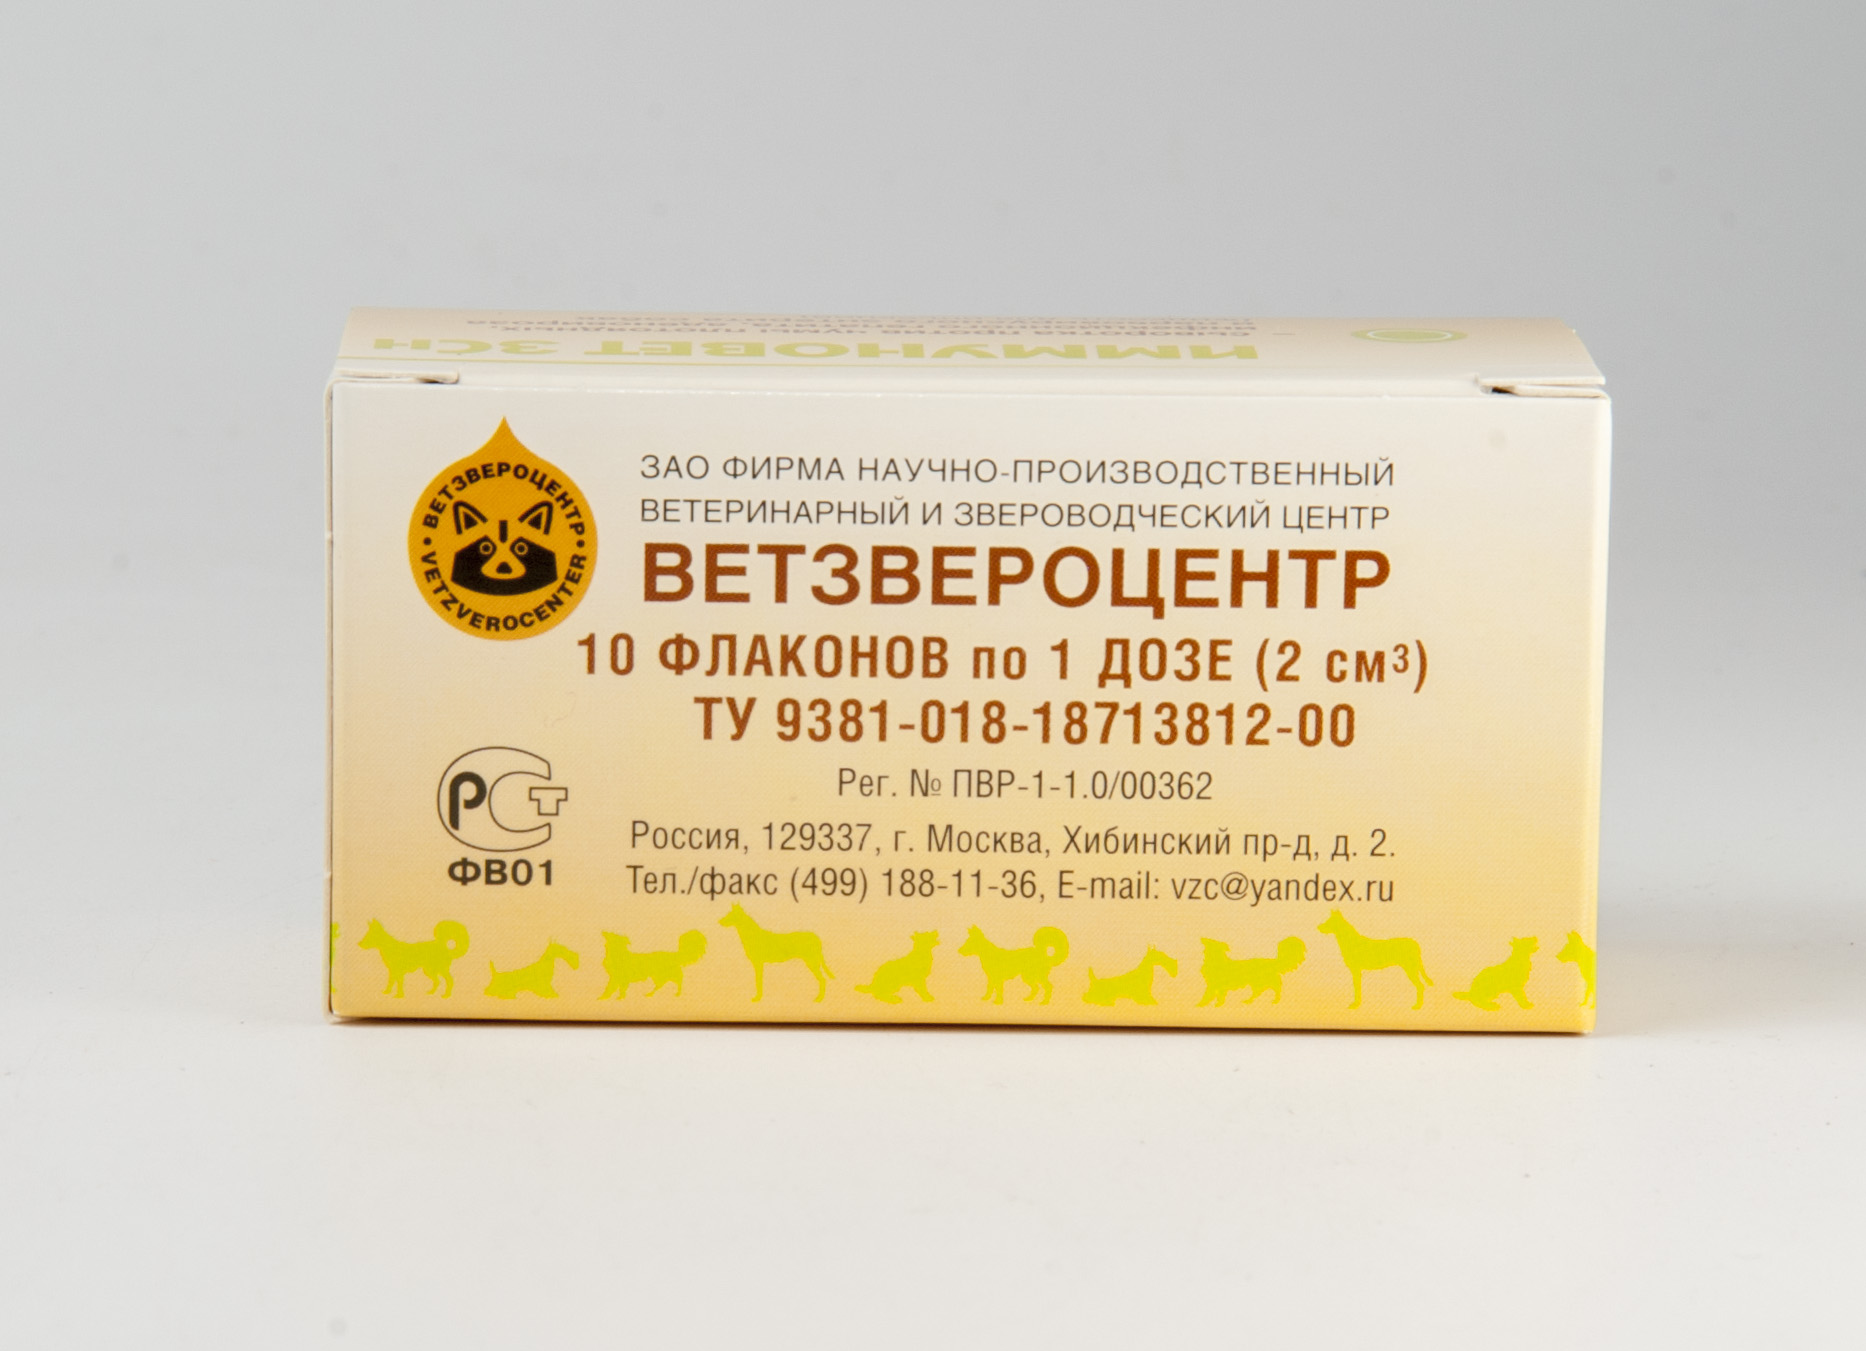 ImmunoVet Pets ízesített immunerősítő tabletta 60db